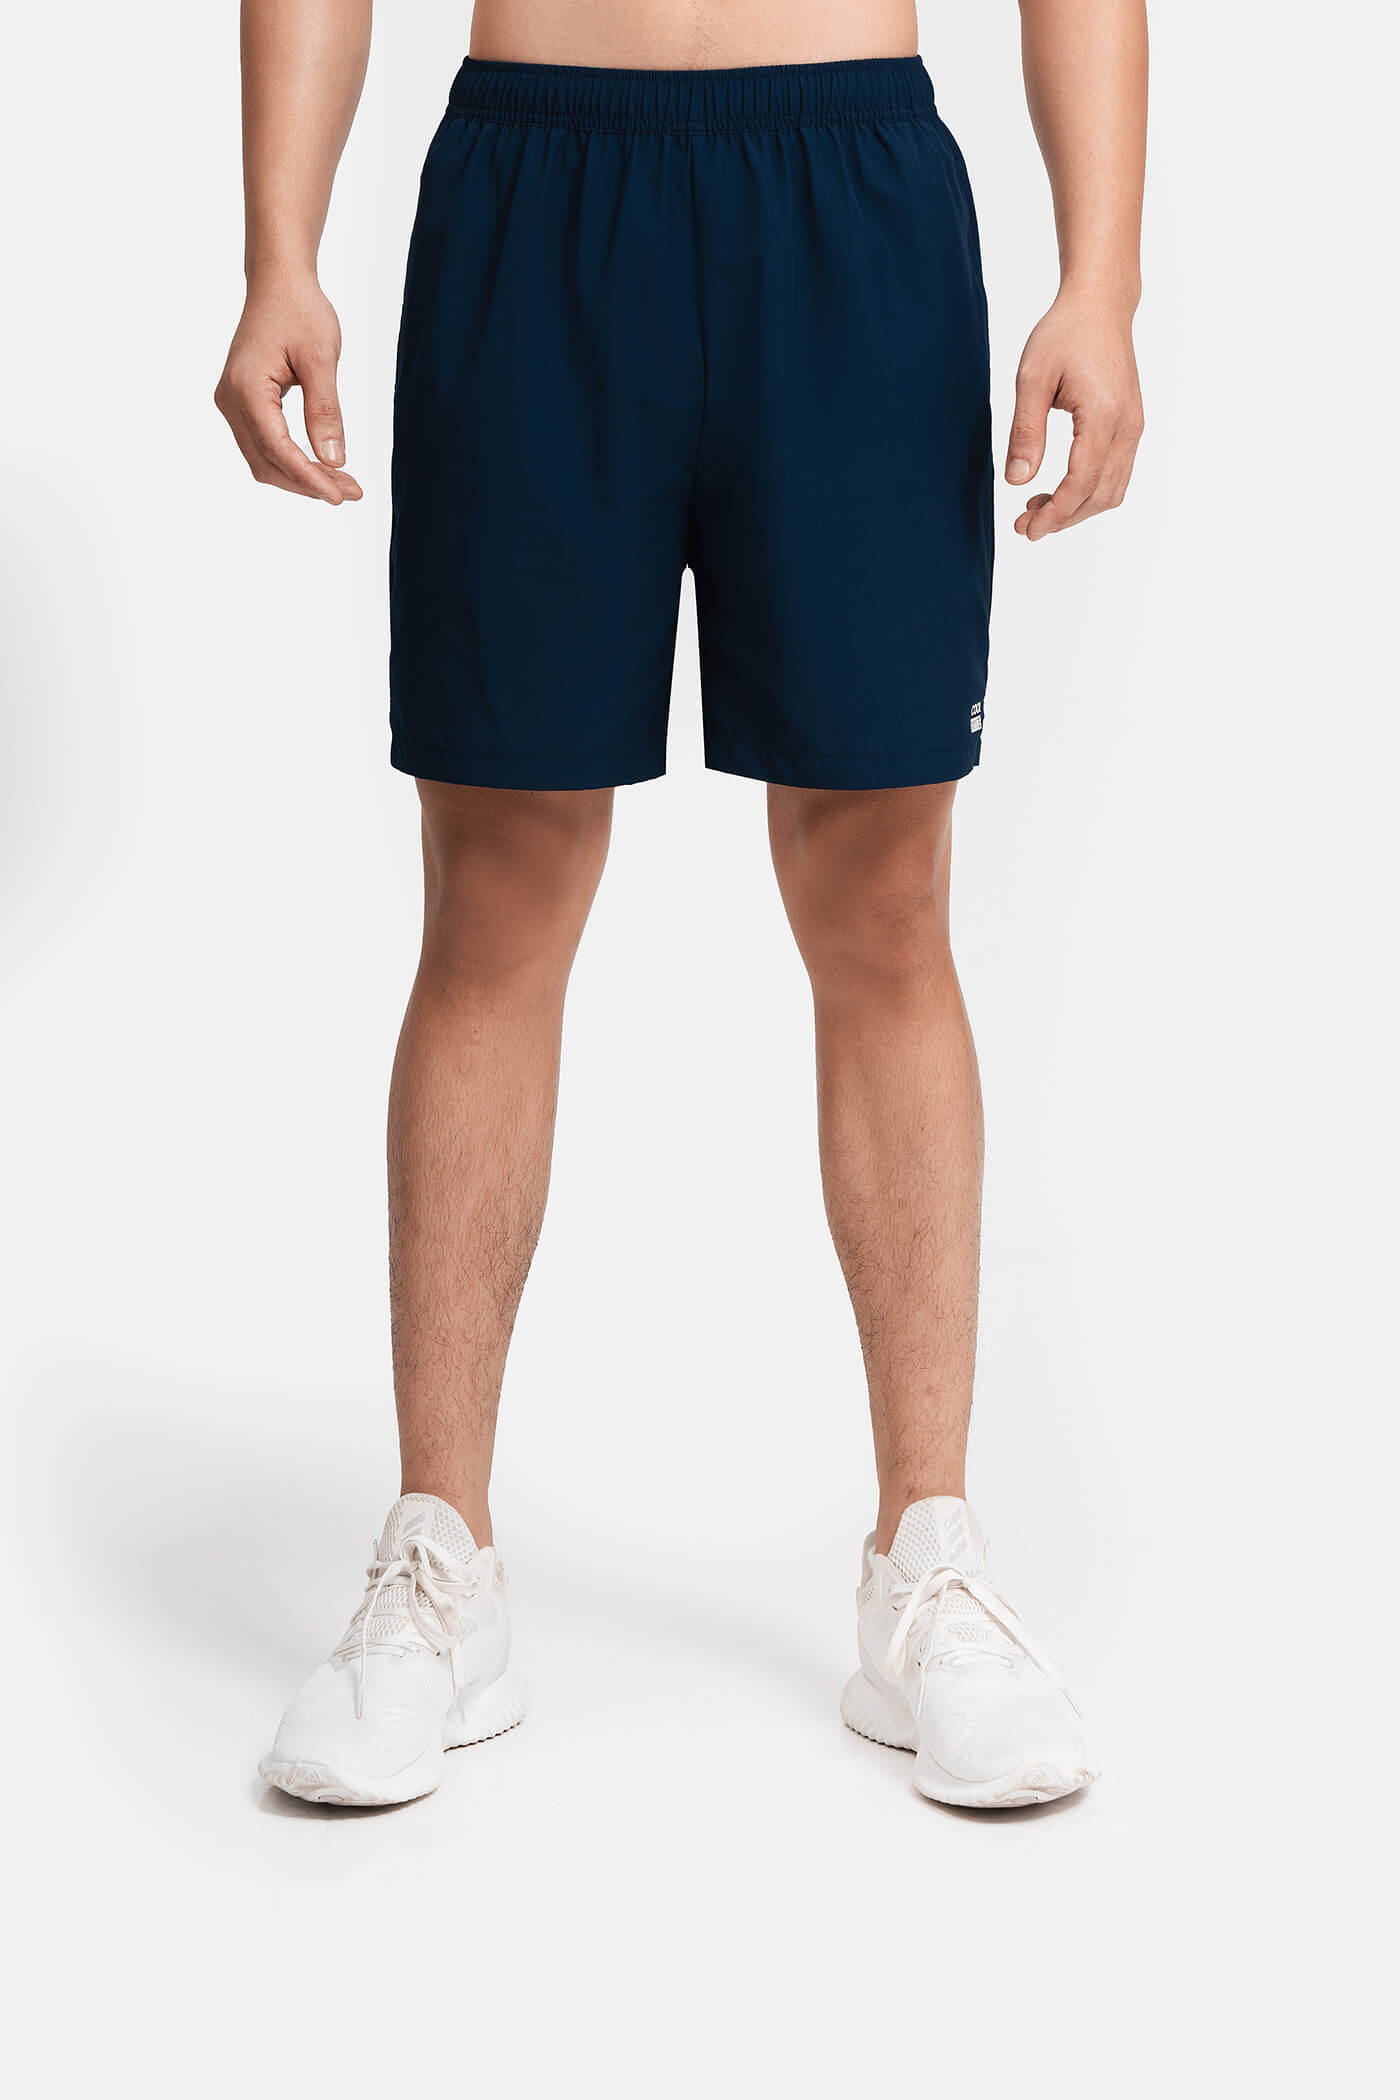 DEAL HOT - Quần shorts nam thể thao Recycle 7" V2 (túi sau có khóa kéo) Xanh navy 1